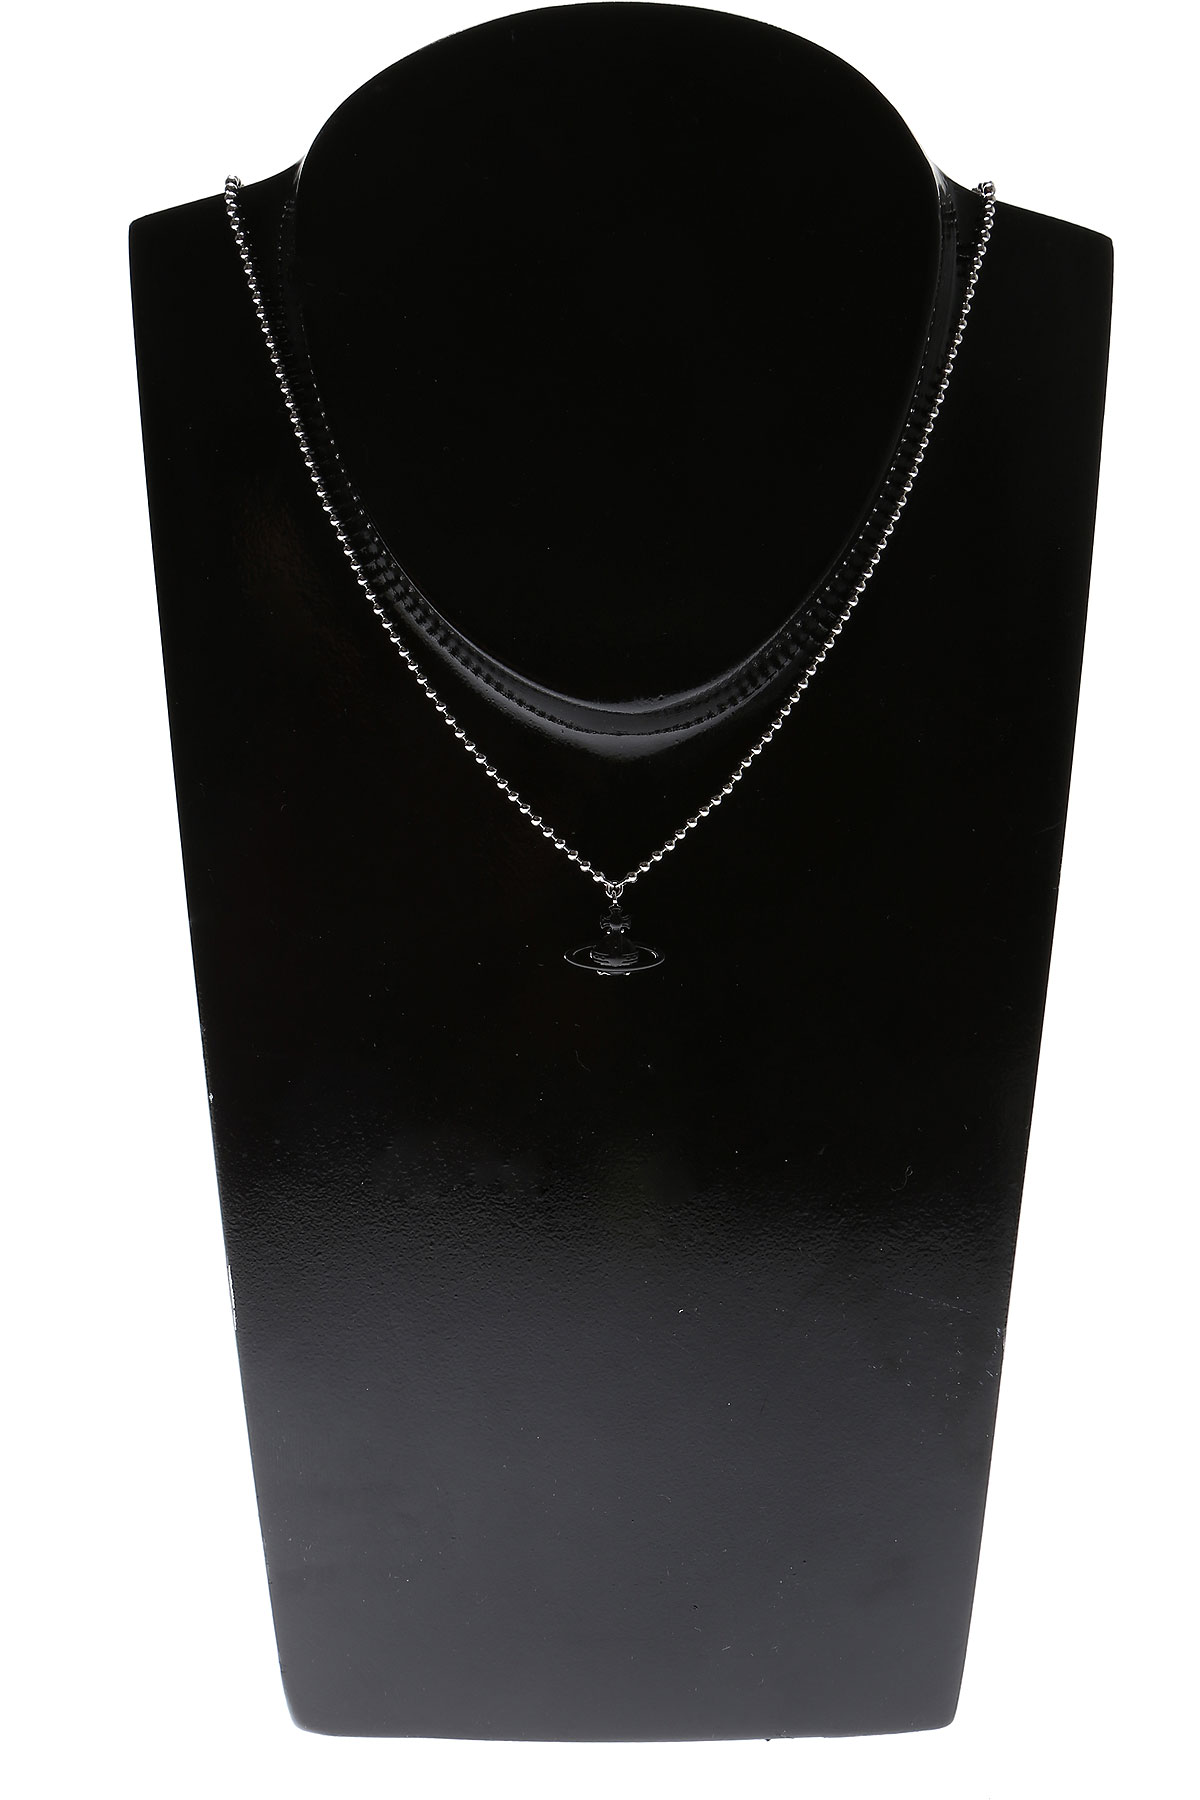 Vivienne Westwood Halskette für Damen Günstig im Sale, Silber, Rhodium, 2017